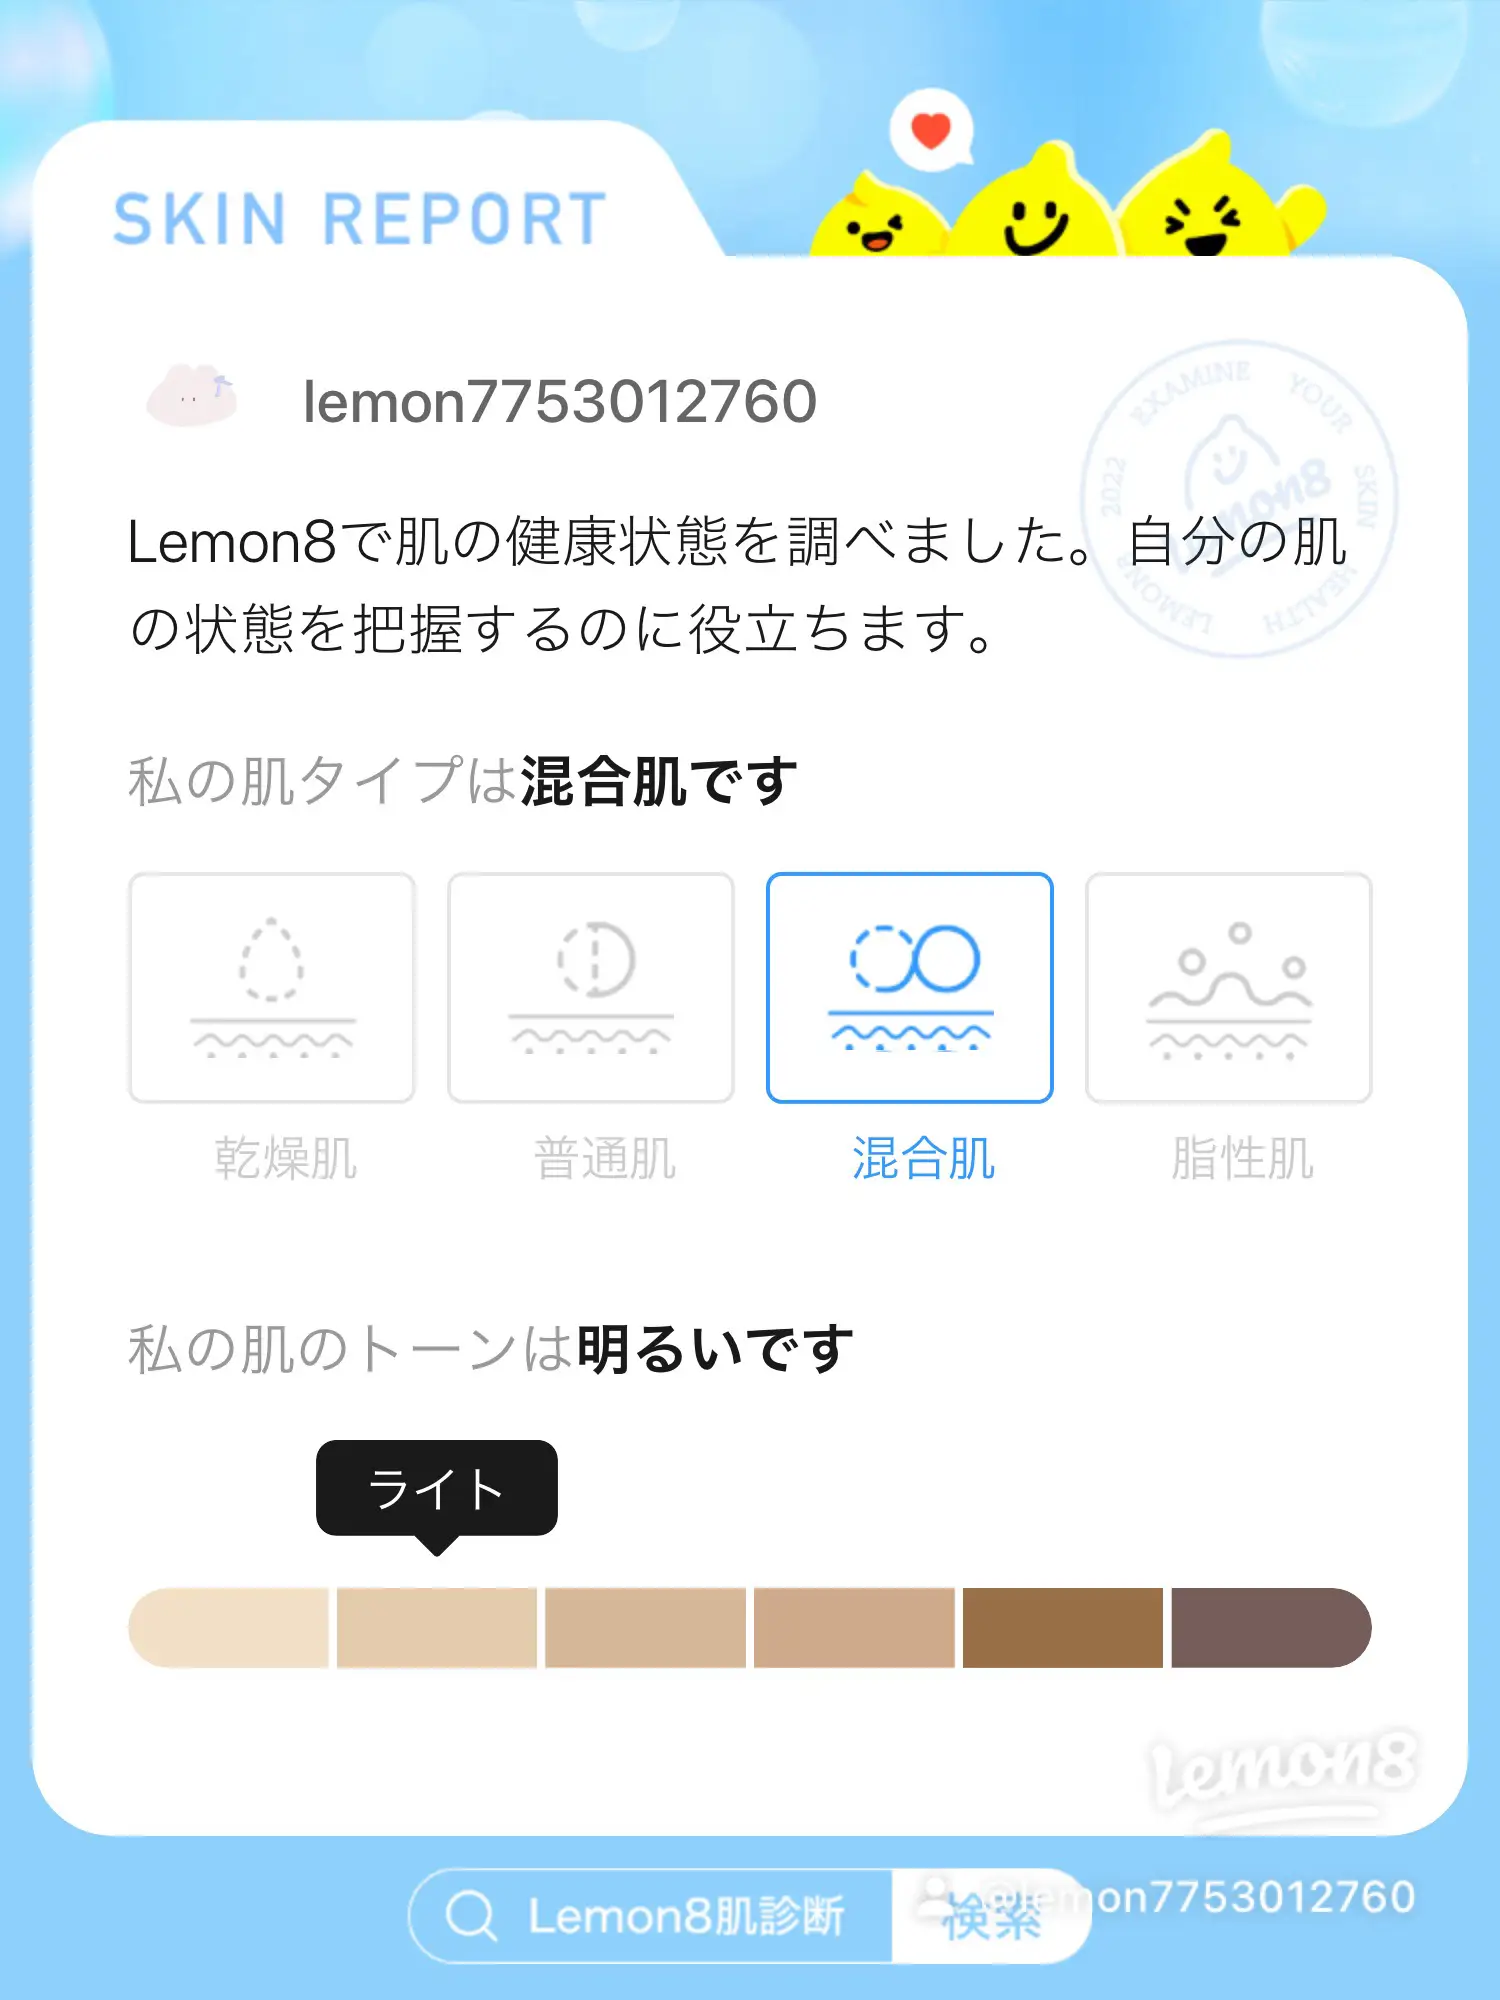 lemon8 肌診断の画像 (2枚目)